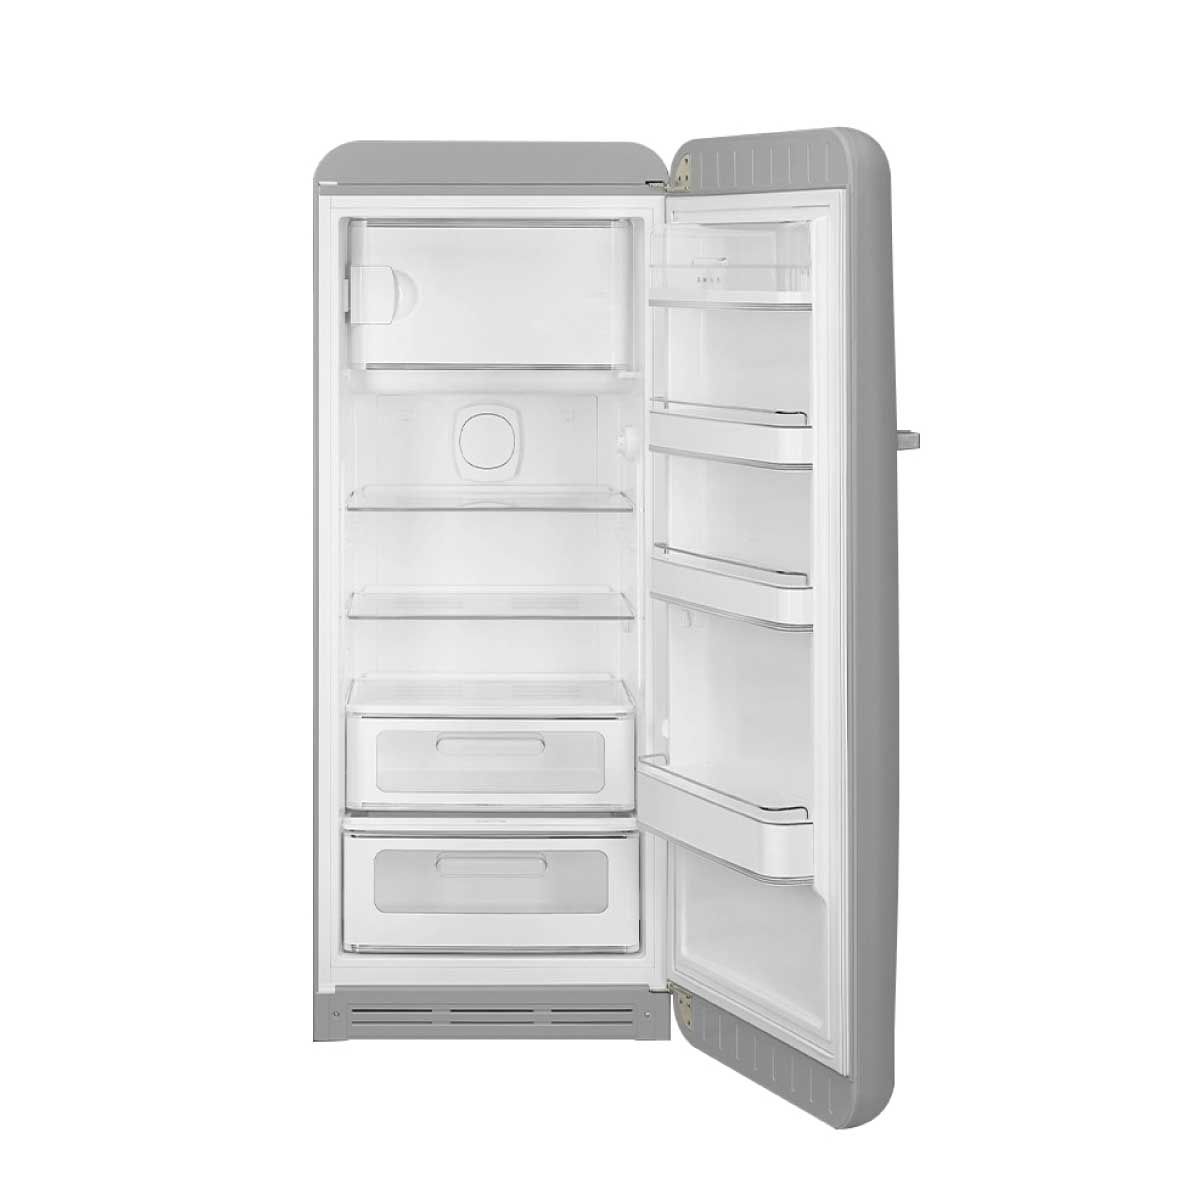 SMEG ตู้เย็น 1 ประตู 9.93 Q. สไตล์ 50 Retro Aesthetic รุ่น FAB28RSV5 สีเงิน